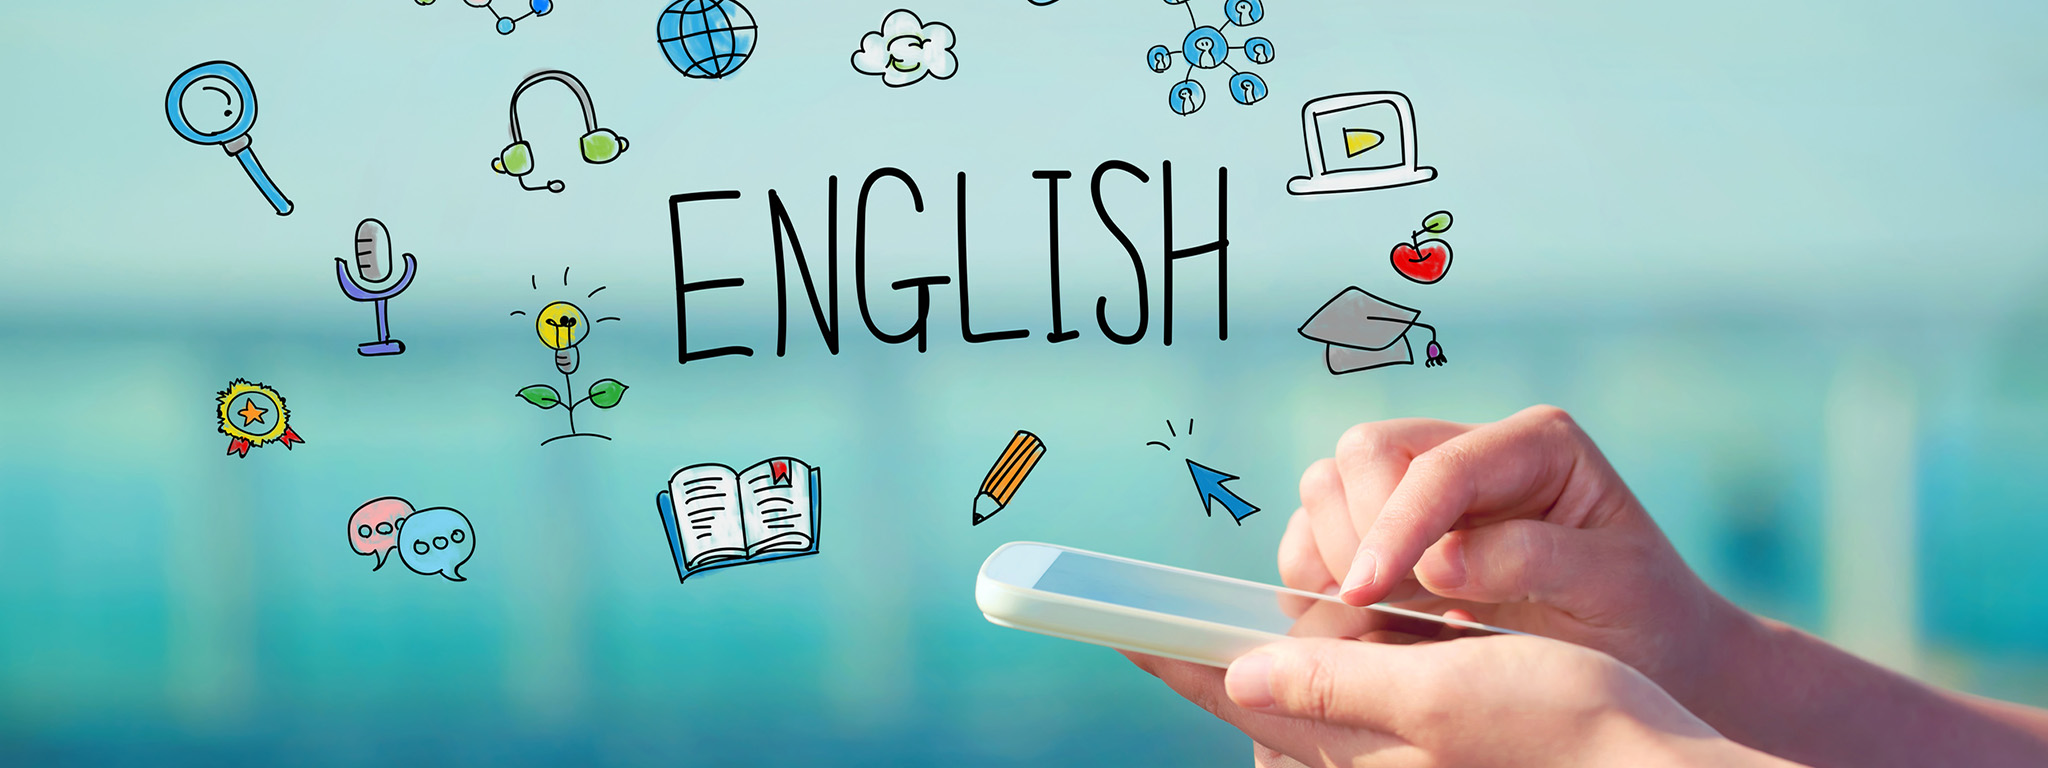 Cùng khám phá phương pháp học tiếng Anh mới dành riêng cho smartphone. Với ứng dụng học tiếng Anh miễn phí từ Yola, bạn có thể học mọi lúc mọi nơi, thông qua hình ảnh sinh động, âm thanh chân thực và các bài kiểm tra thực hành. Hãy cùng trải nghiệm và nâng cao khả năng Tiếng Anh của mình.